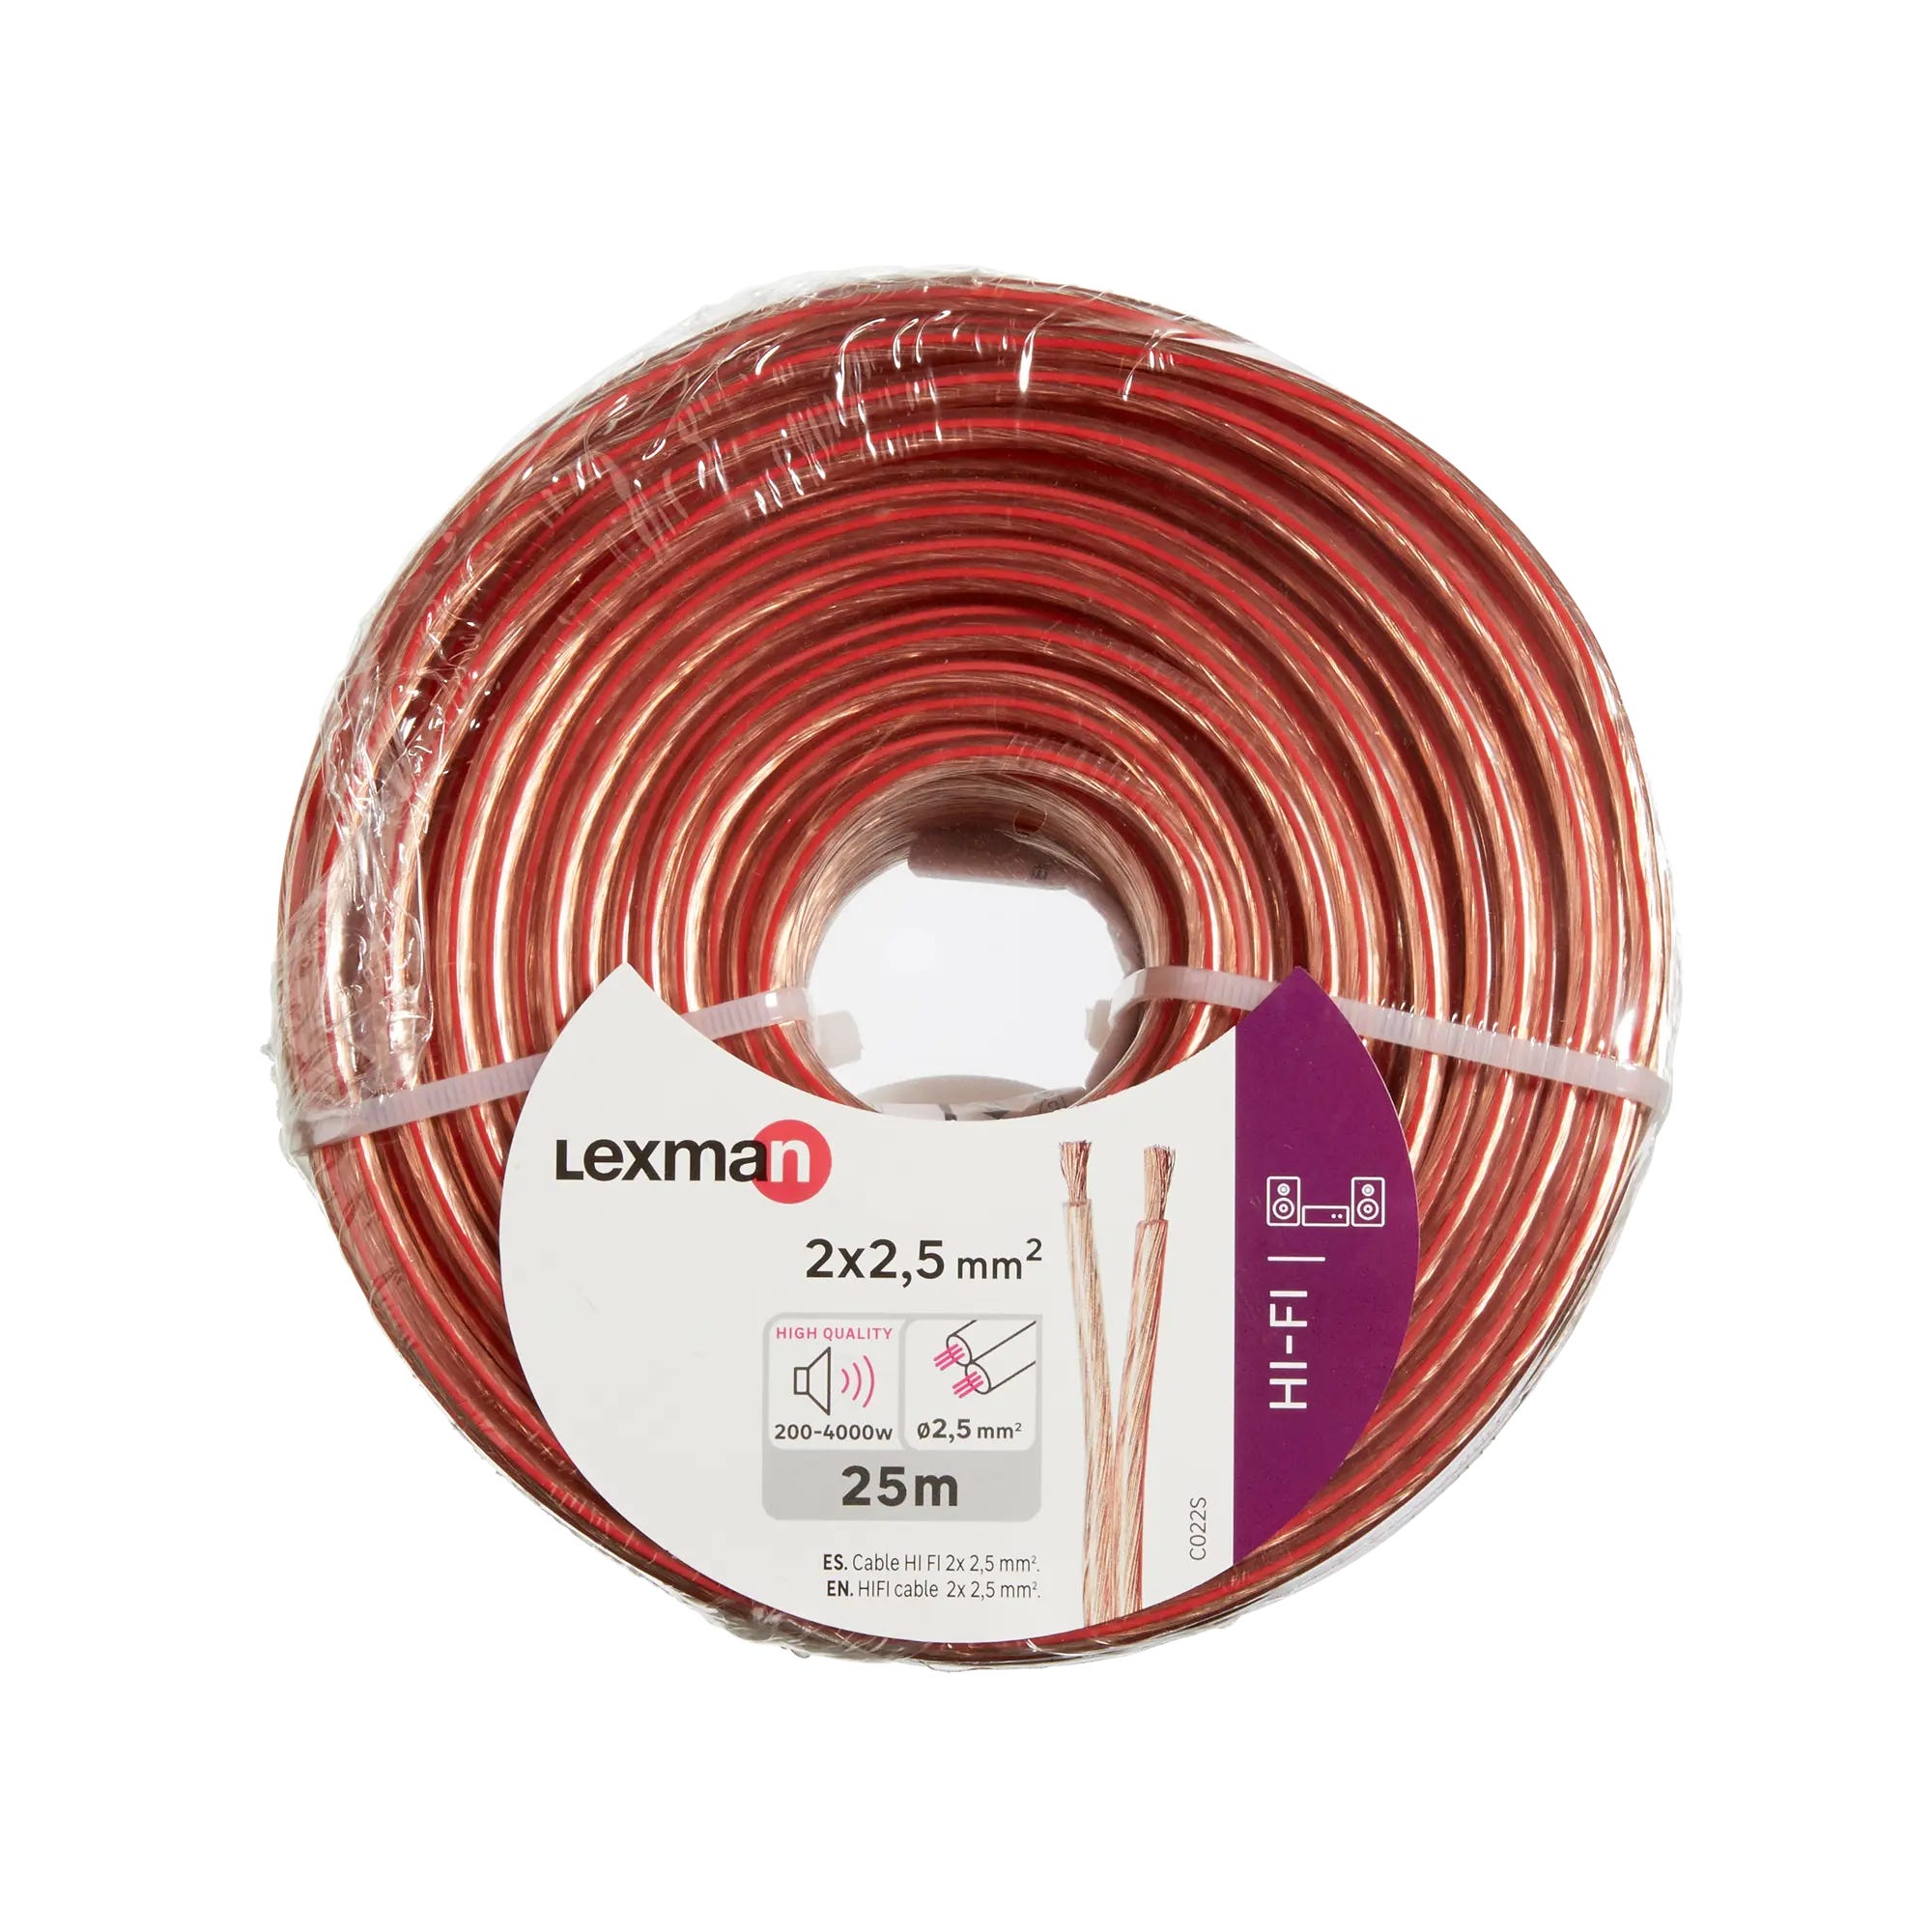 Cable para altavoz 2x 4 mm 10 M rojo-negro